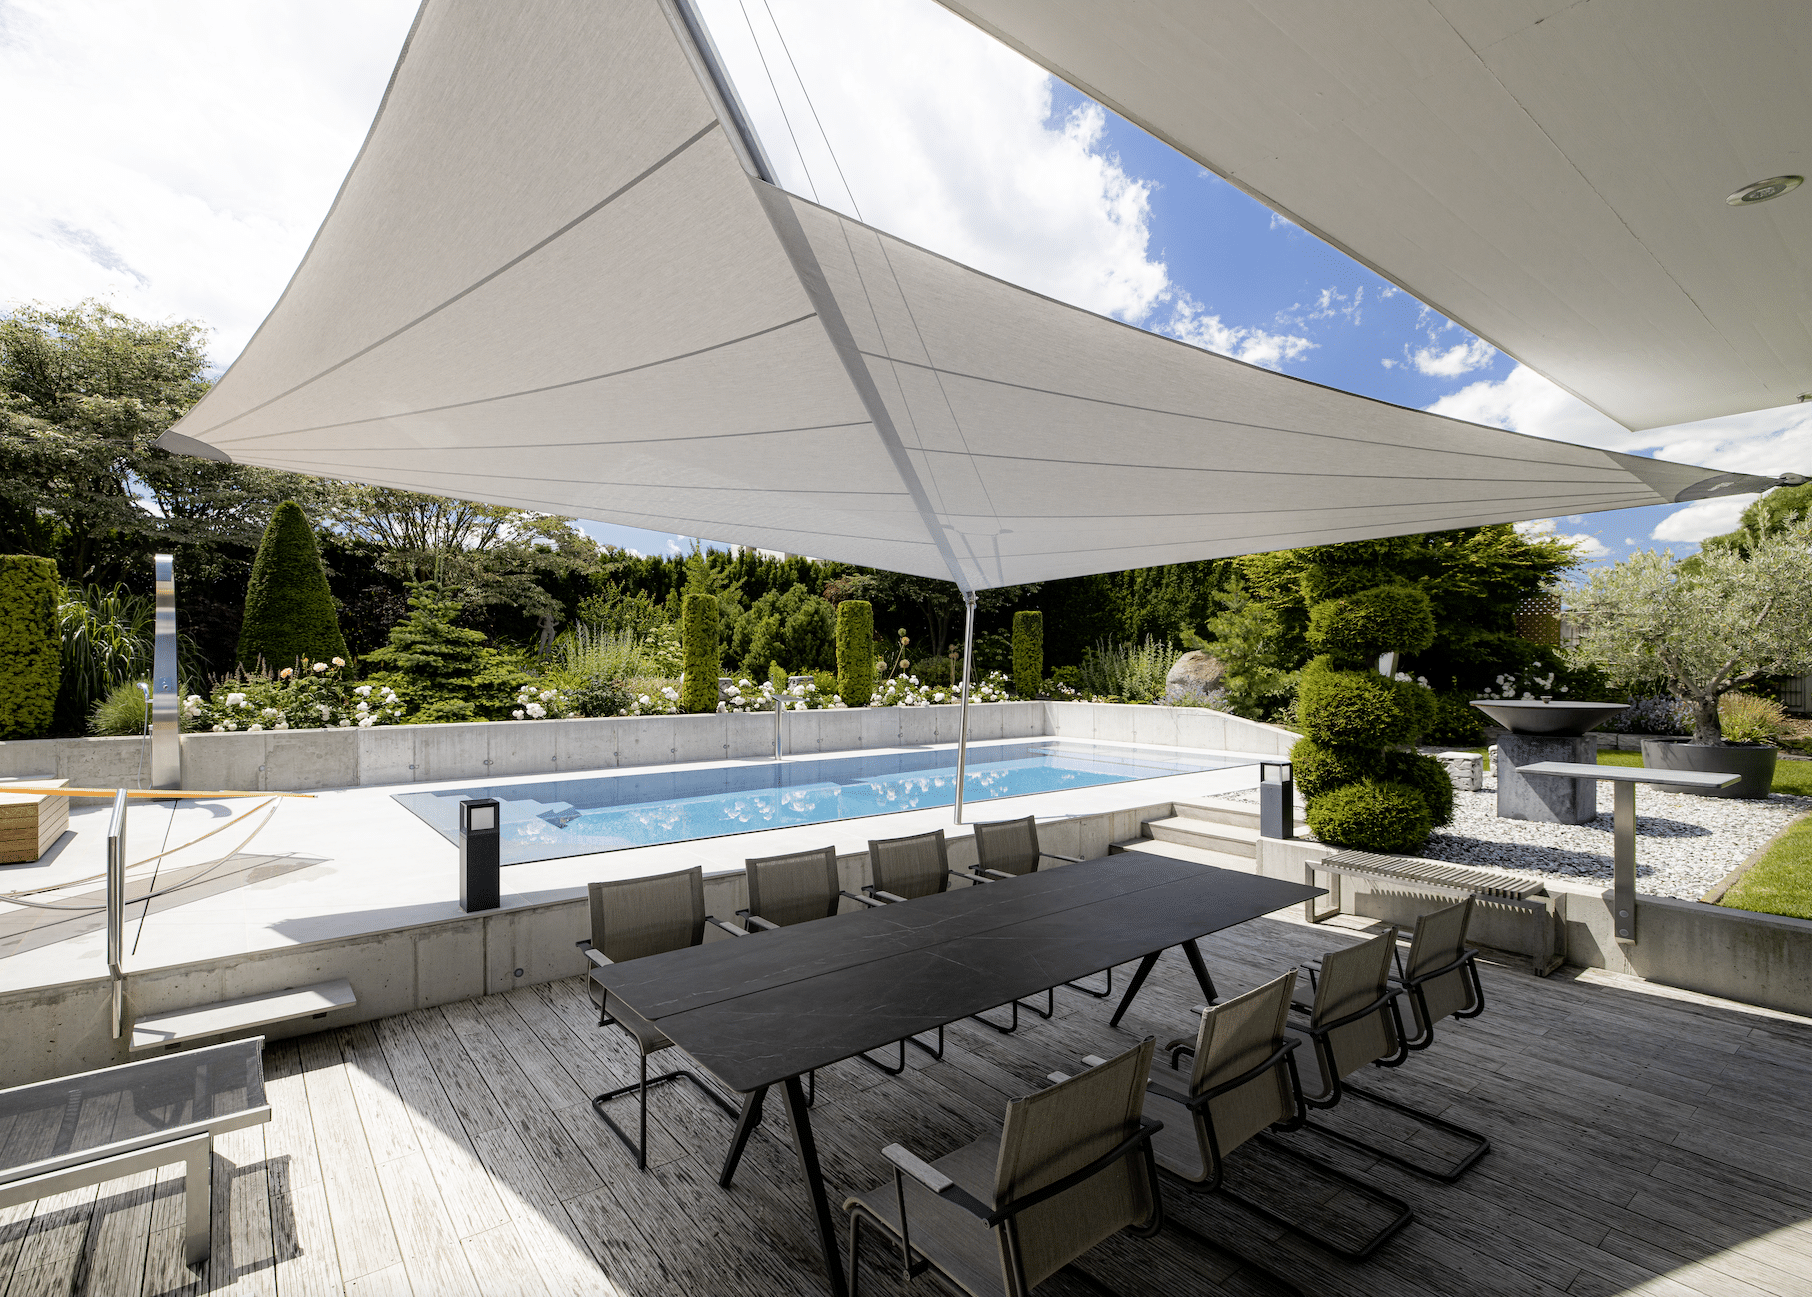 Großzügiger Terrasse mit modernem Sonnensegel von SunSquare, formschönen Sitzmöglichkeiten und großem Swimmingpool im Hintergrund.